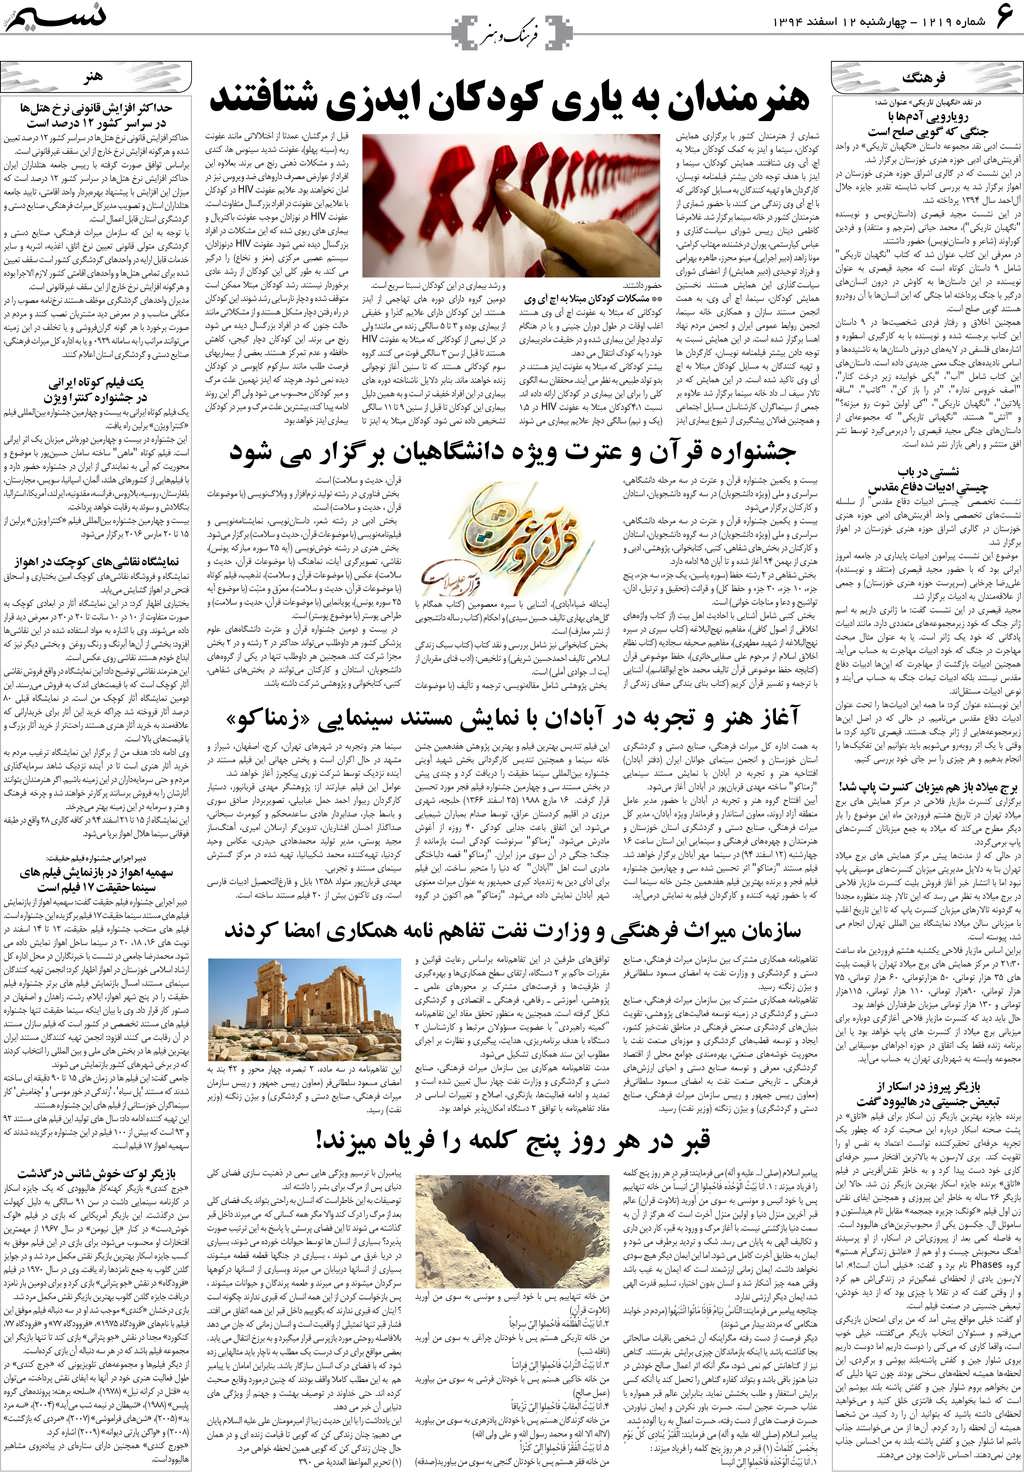 صفحه فرهنگ و هنر روزنامه نسیم شماره 1219